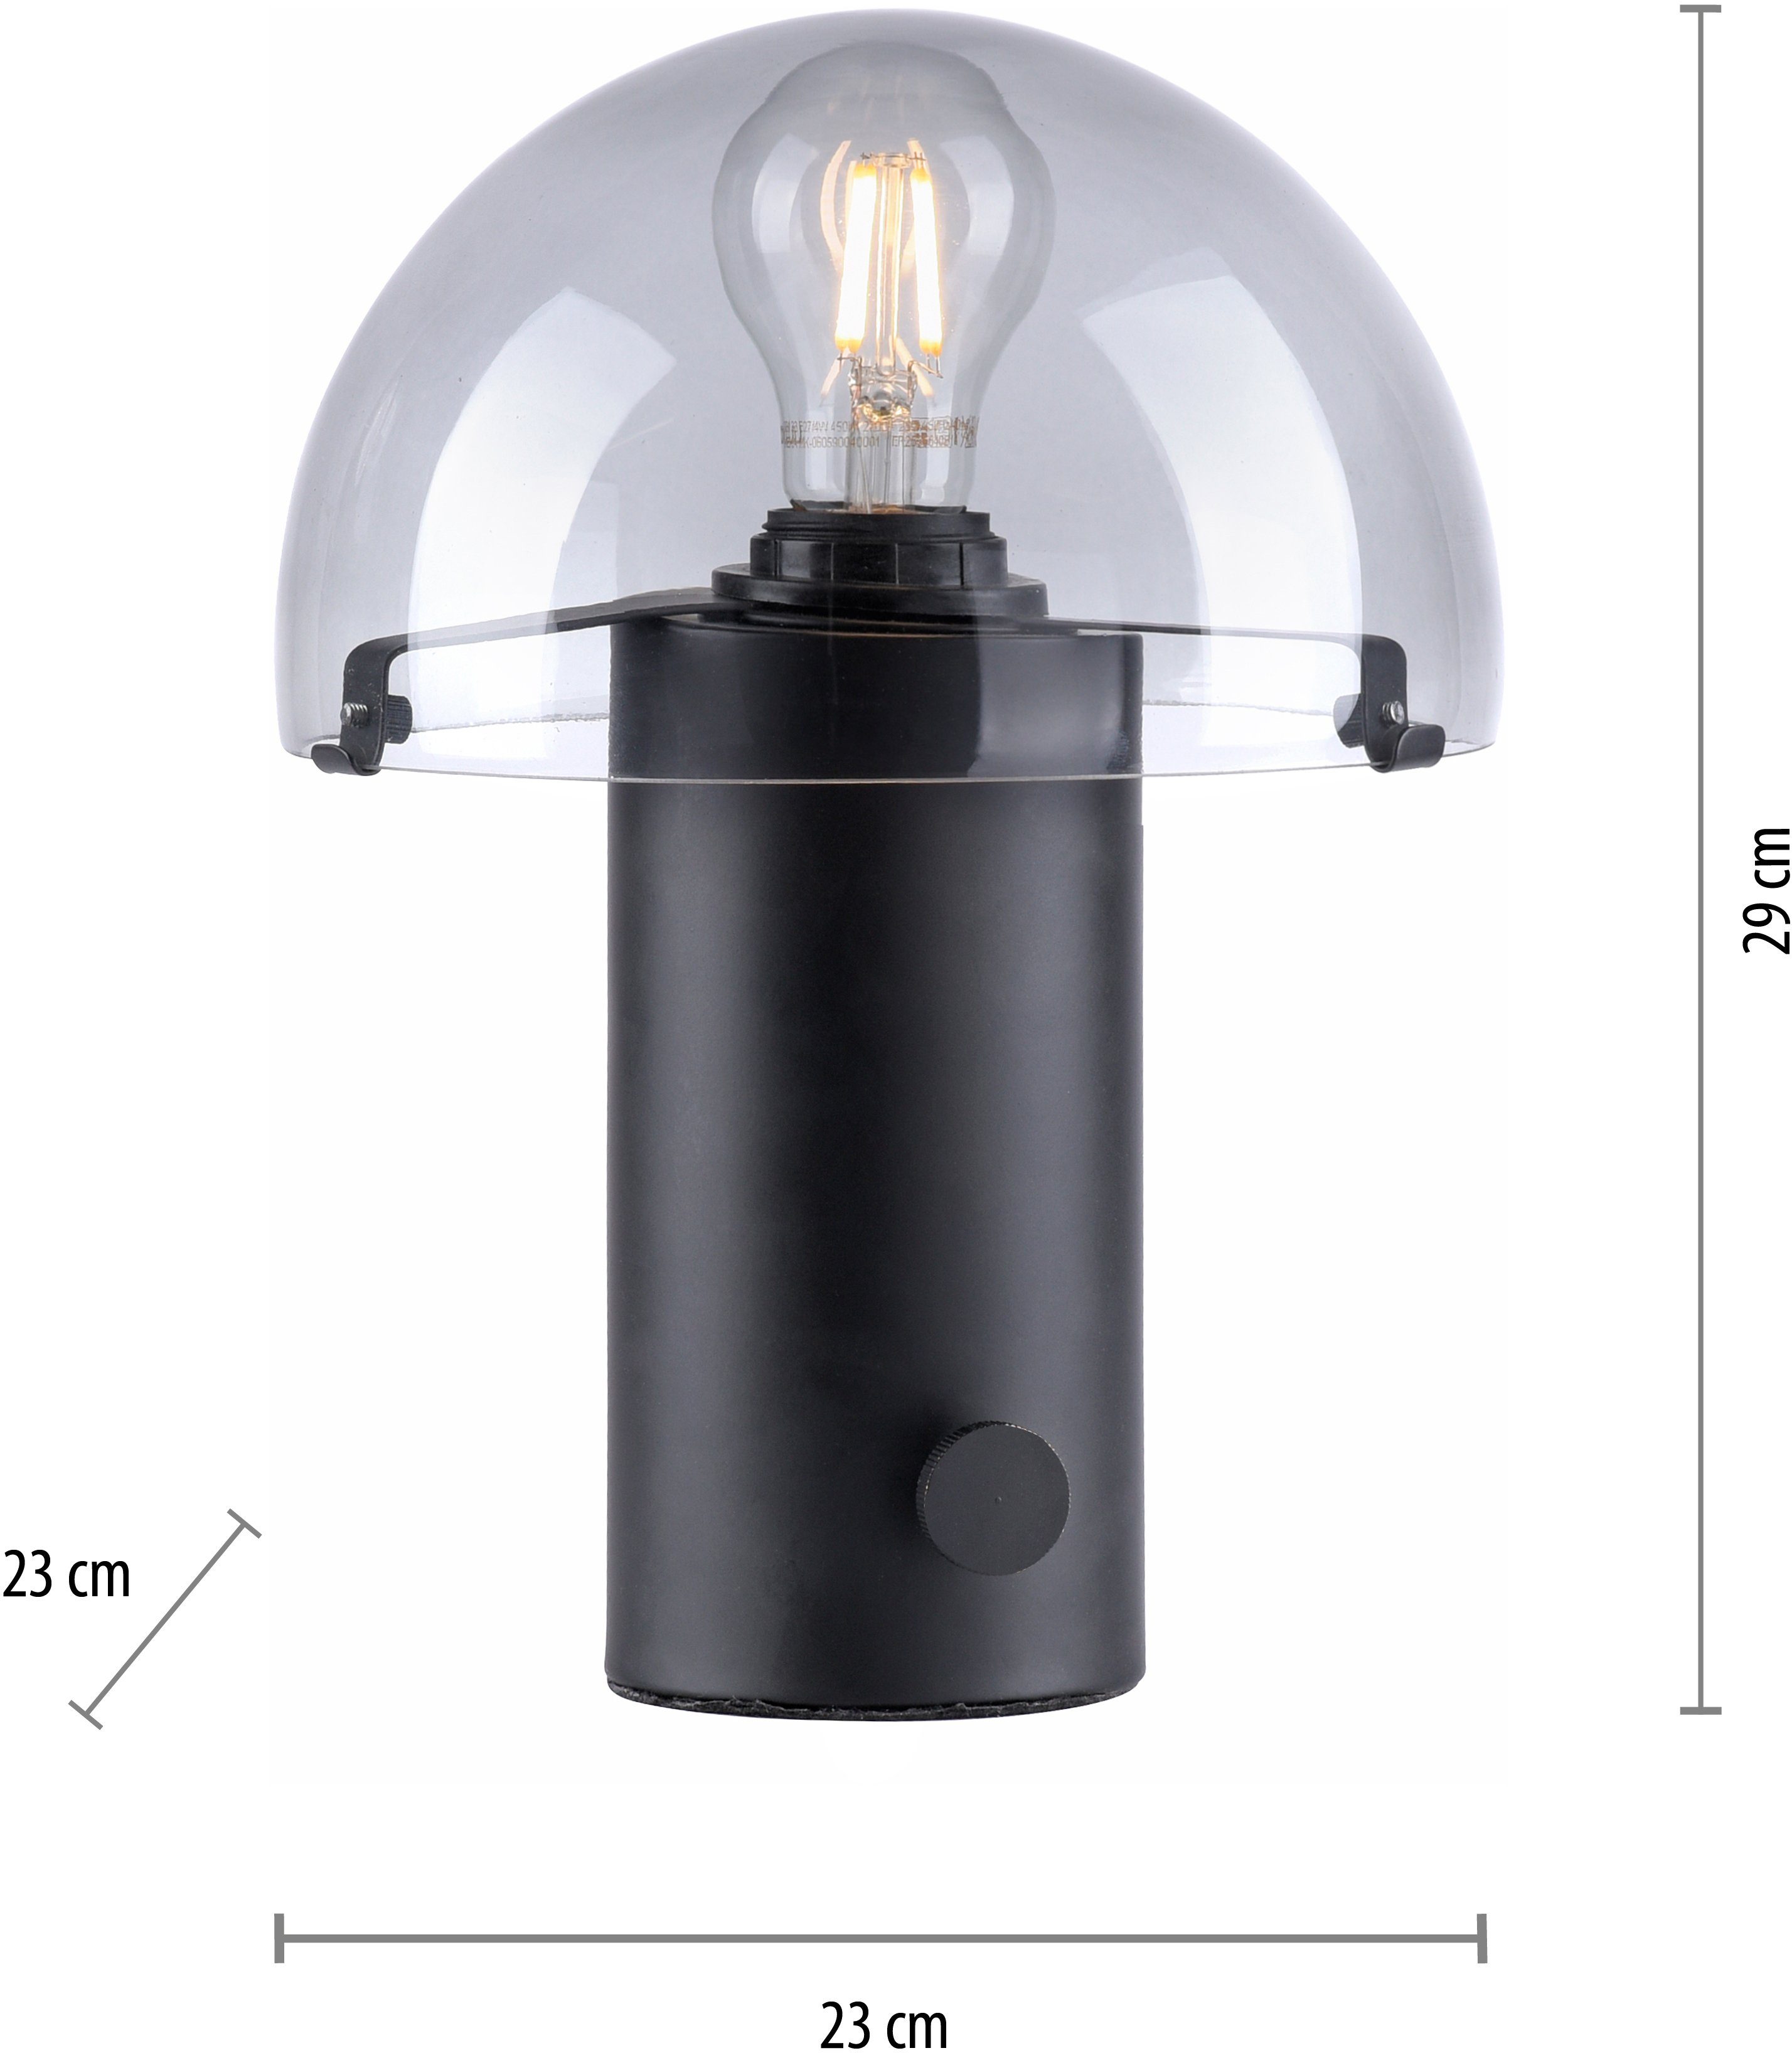 Tischlampe Pilzlampe Leuchtmittel, schwarz/rauchglas Drehschalter, ohne andas E27, Ein-/Ausschalter, Tischleuchte Skickja, skandinavisch